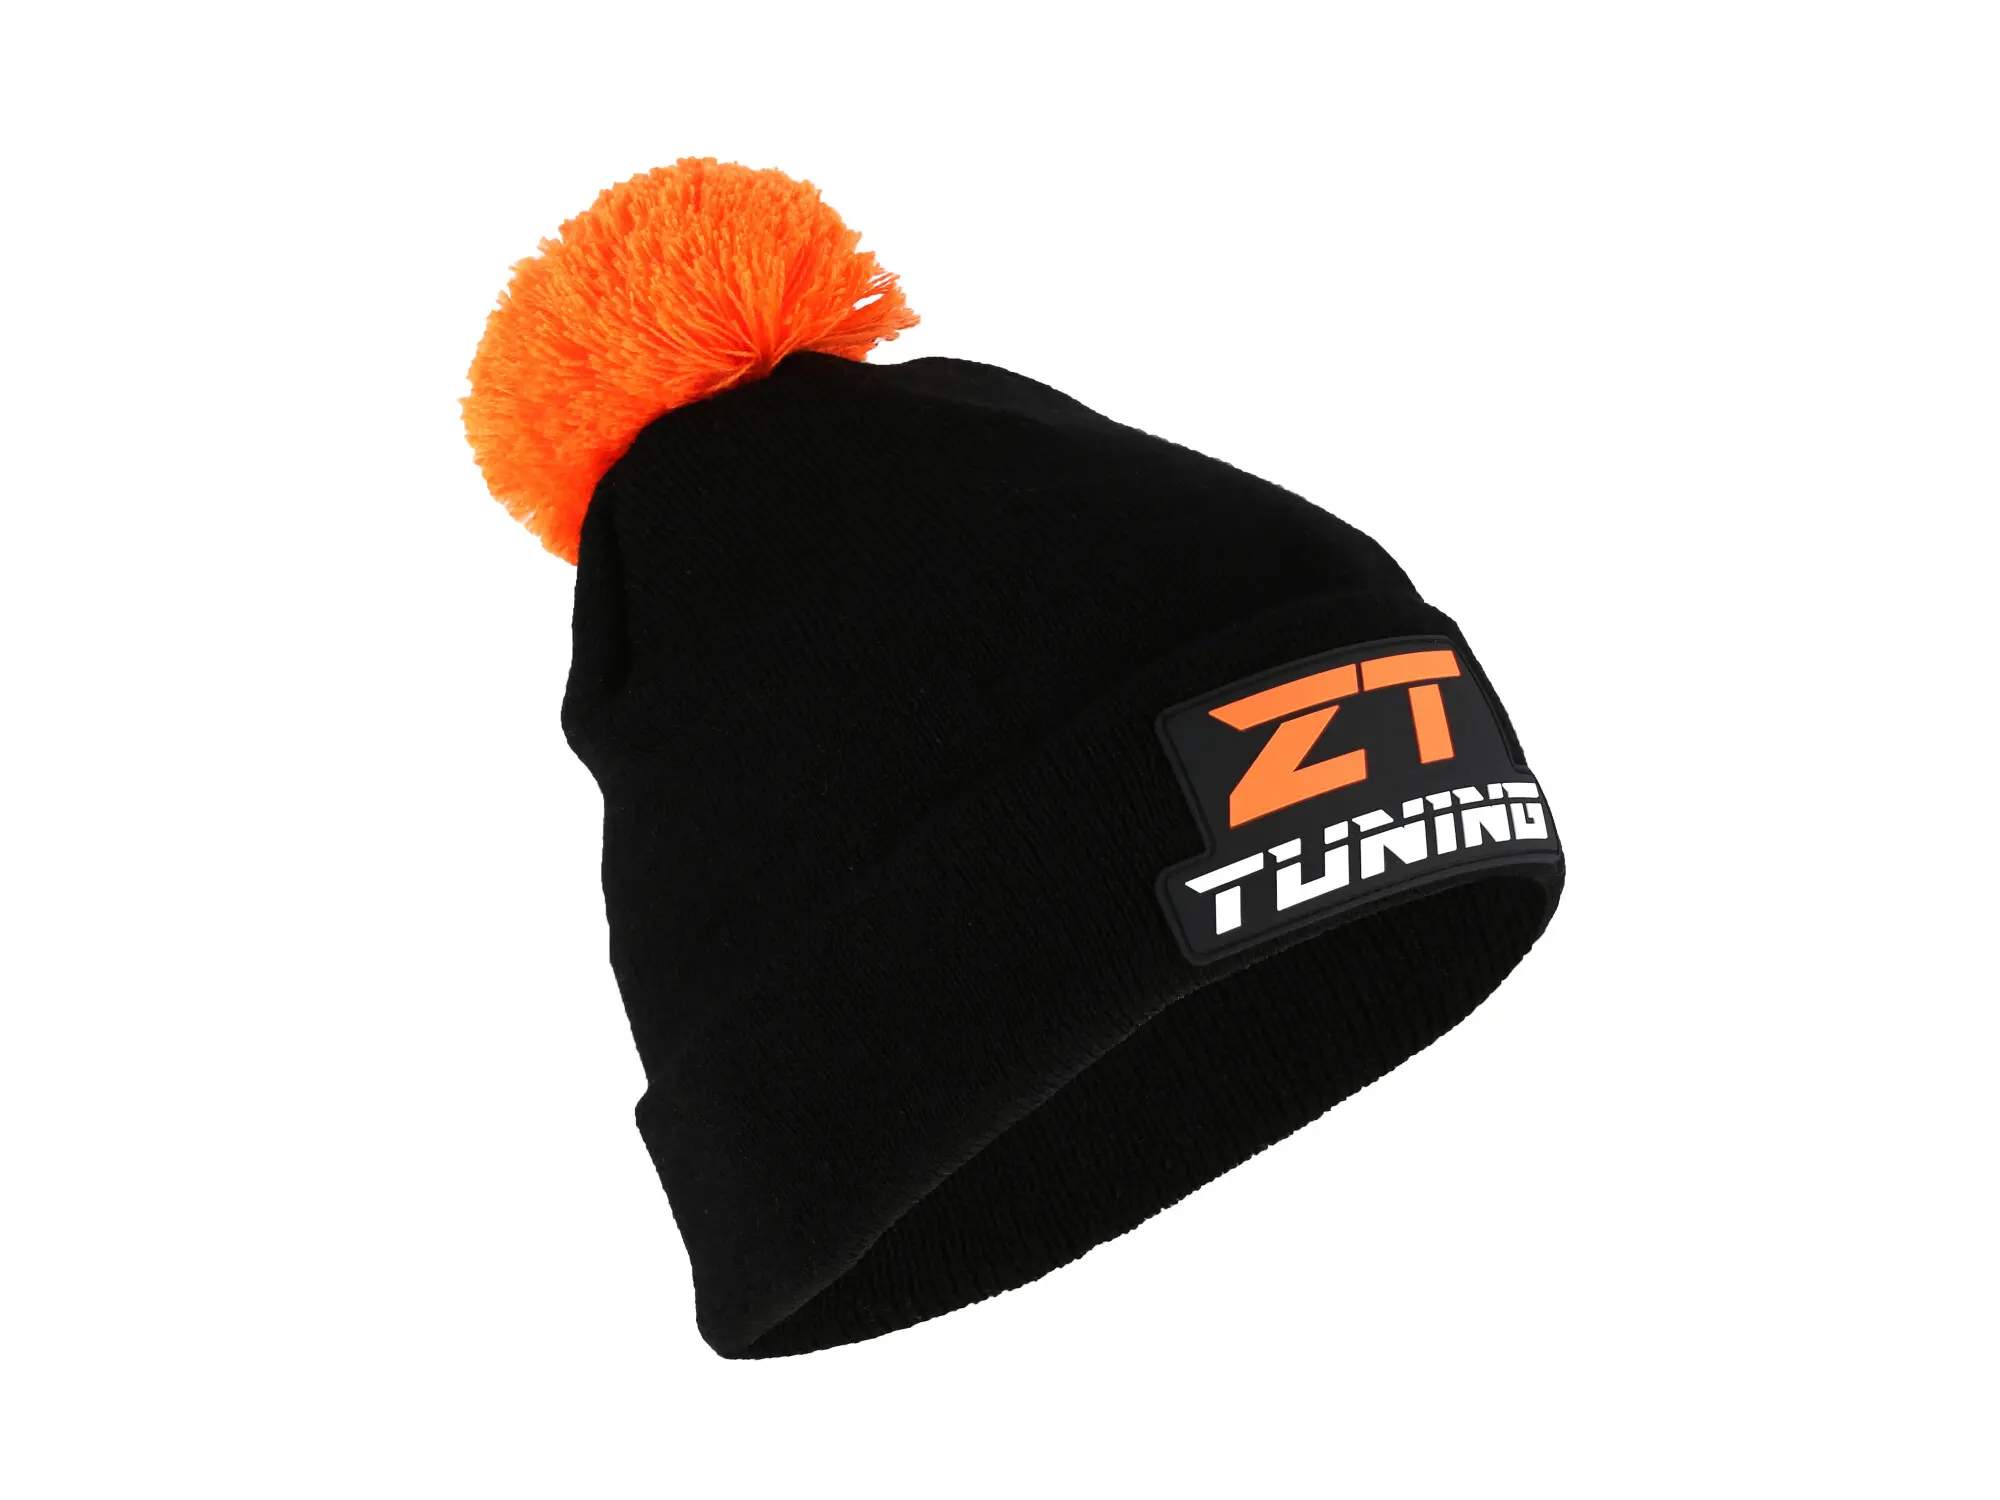 Bommelmütze "ZT-Tuning" - Farbe Schwarz / Orange, Art.-Nr.: 10072974 - Bild 1